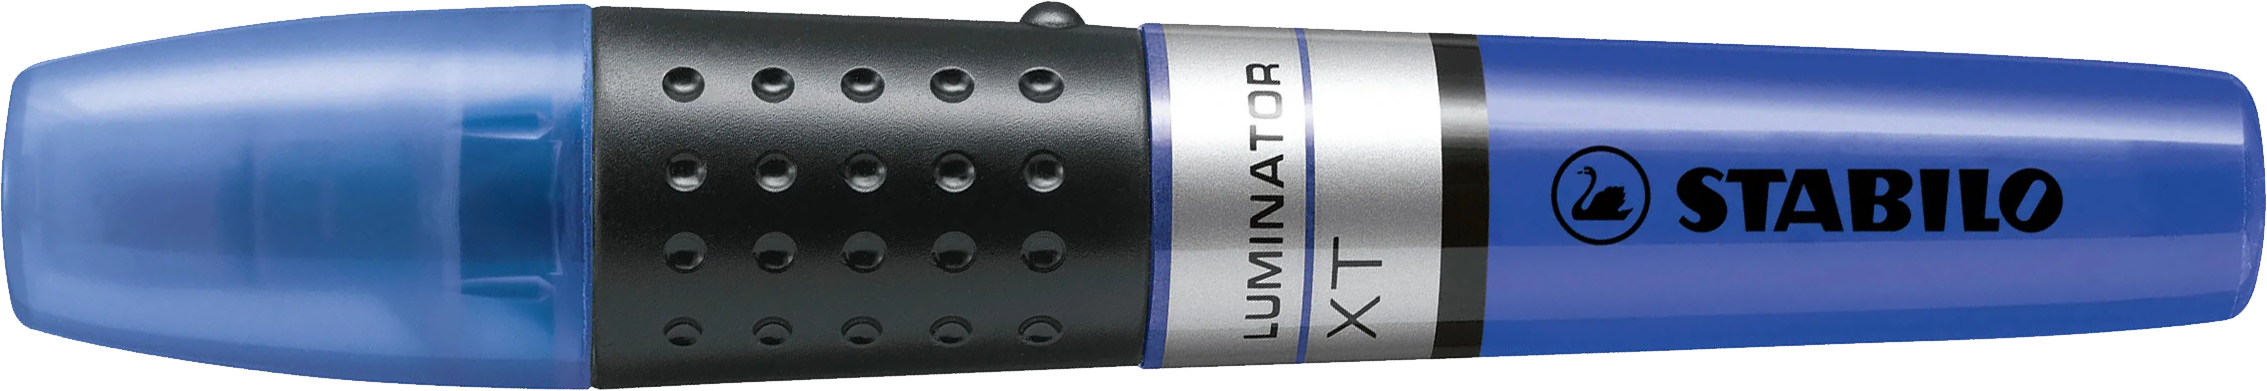 STABILO Textmarker LUMINATOR 2-5mm 71/41 bleu